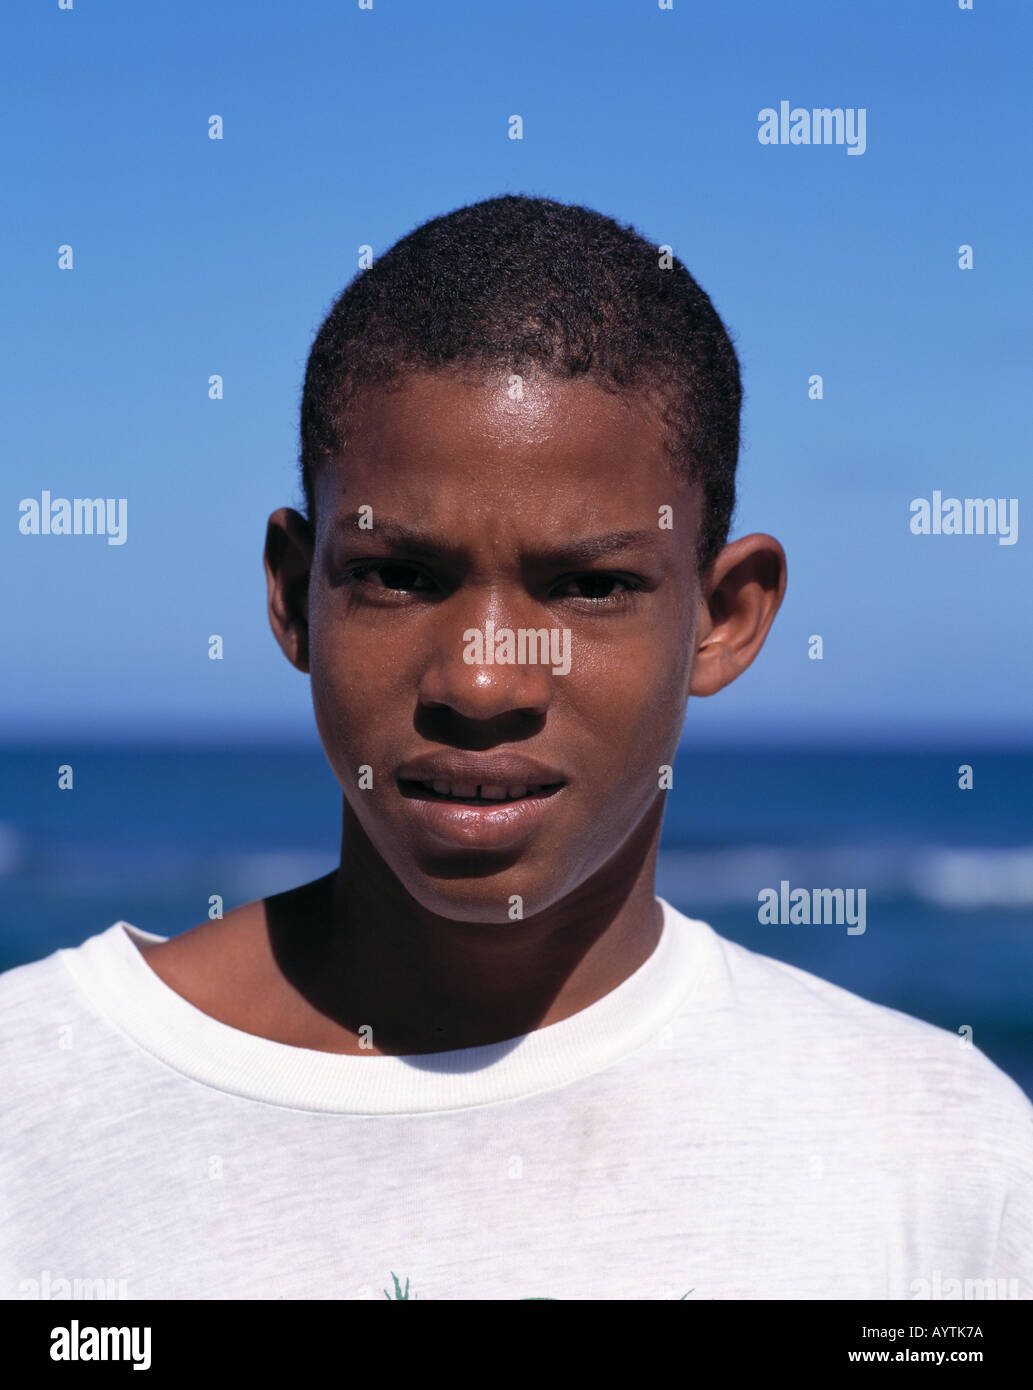 Garçon en t-shirt, de la jeunesse, métis, mulâtre, portrait, République dominicaine, mer des Caraïbes Banque D'Images